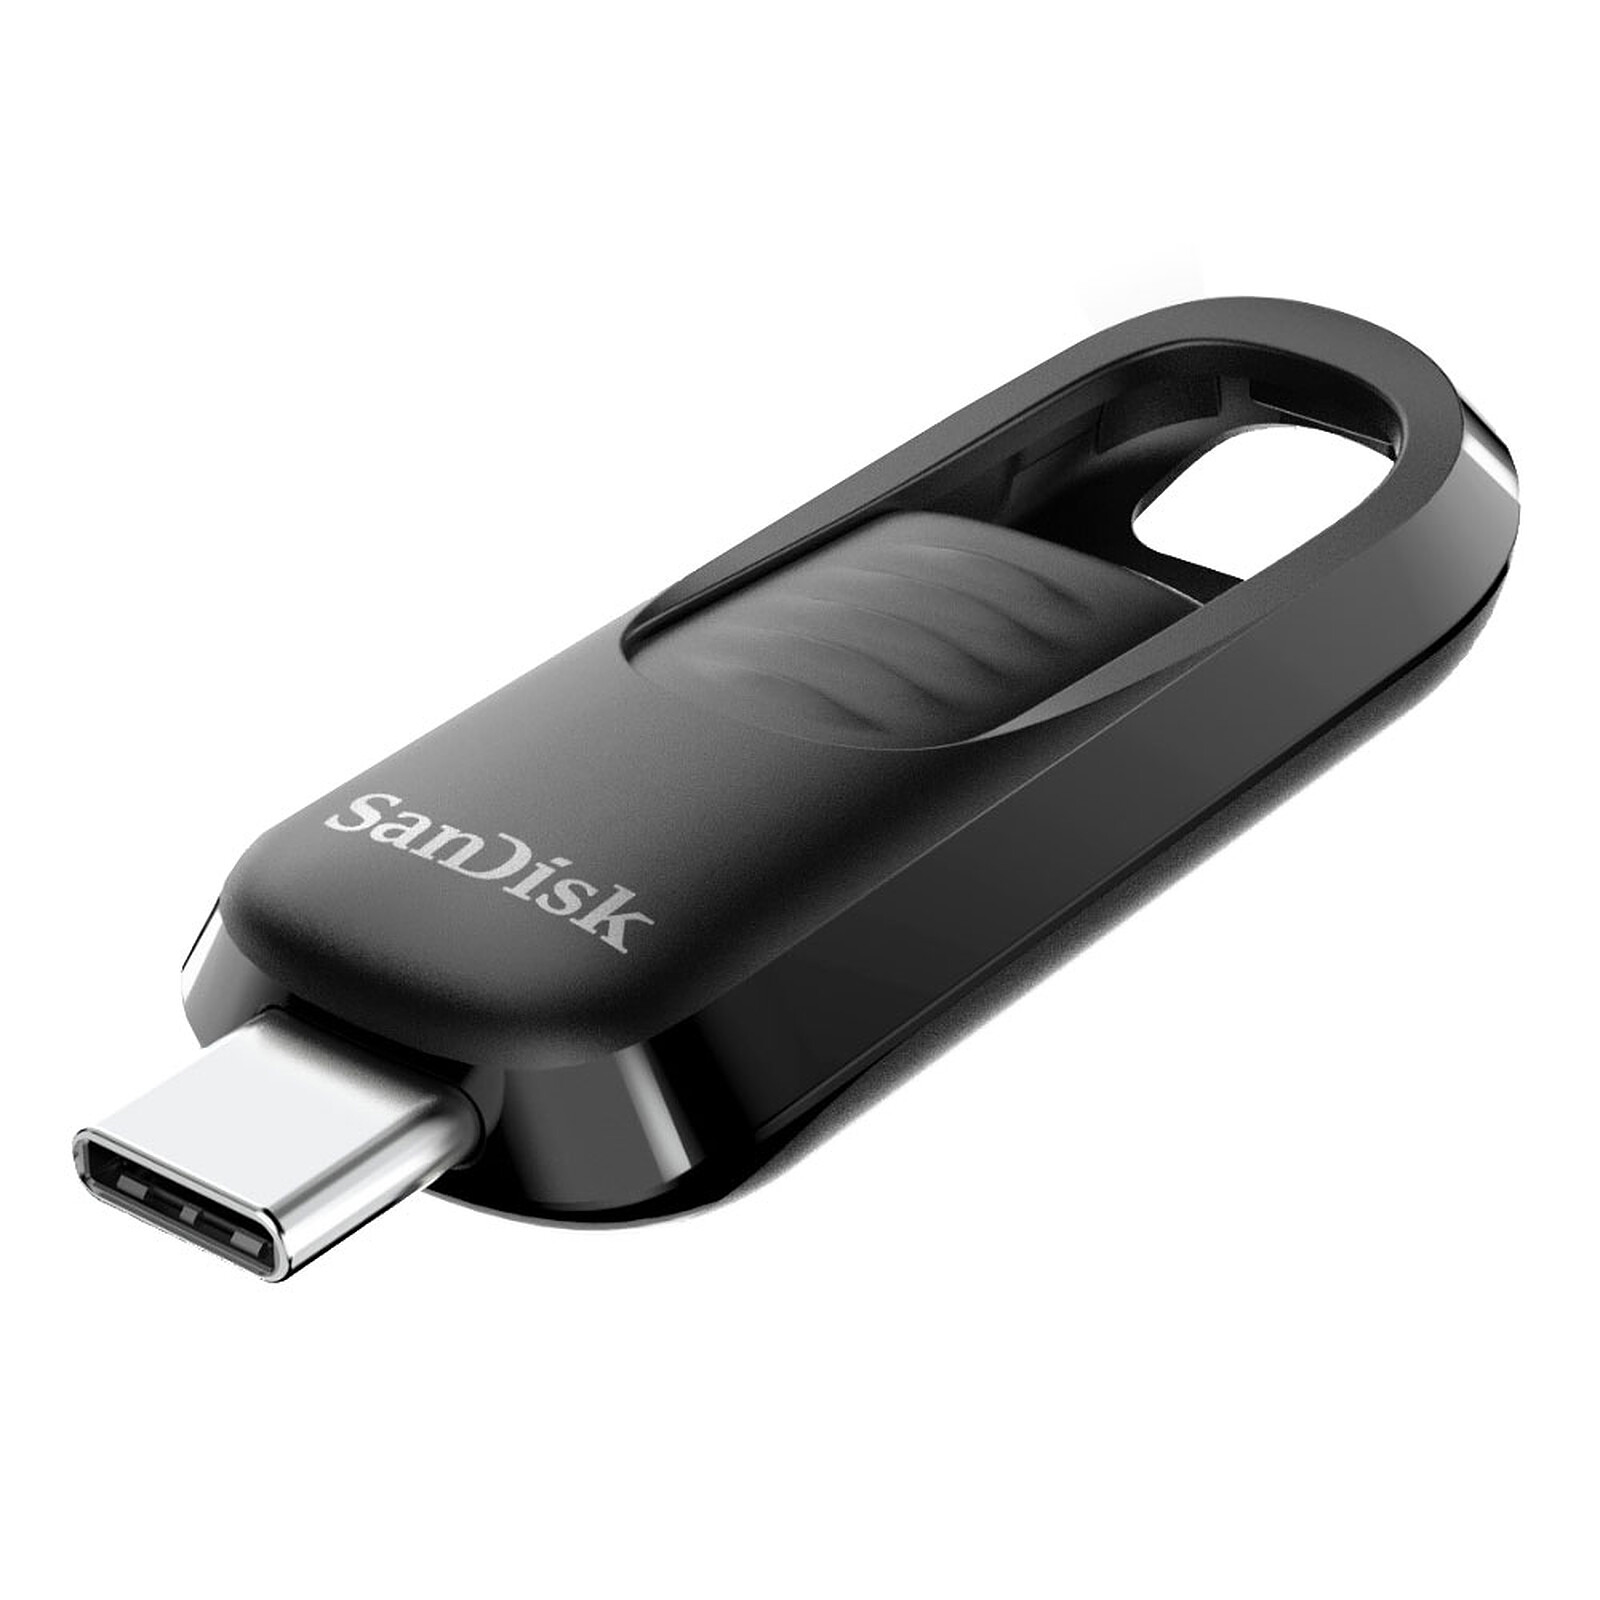 Clé USB SanDisk 32Go- Double connectique micro-USB et USB 3.0